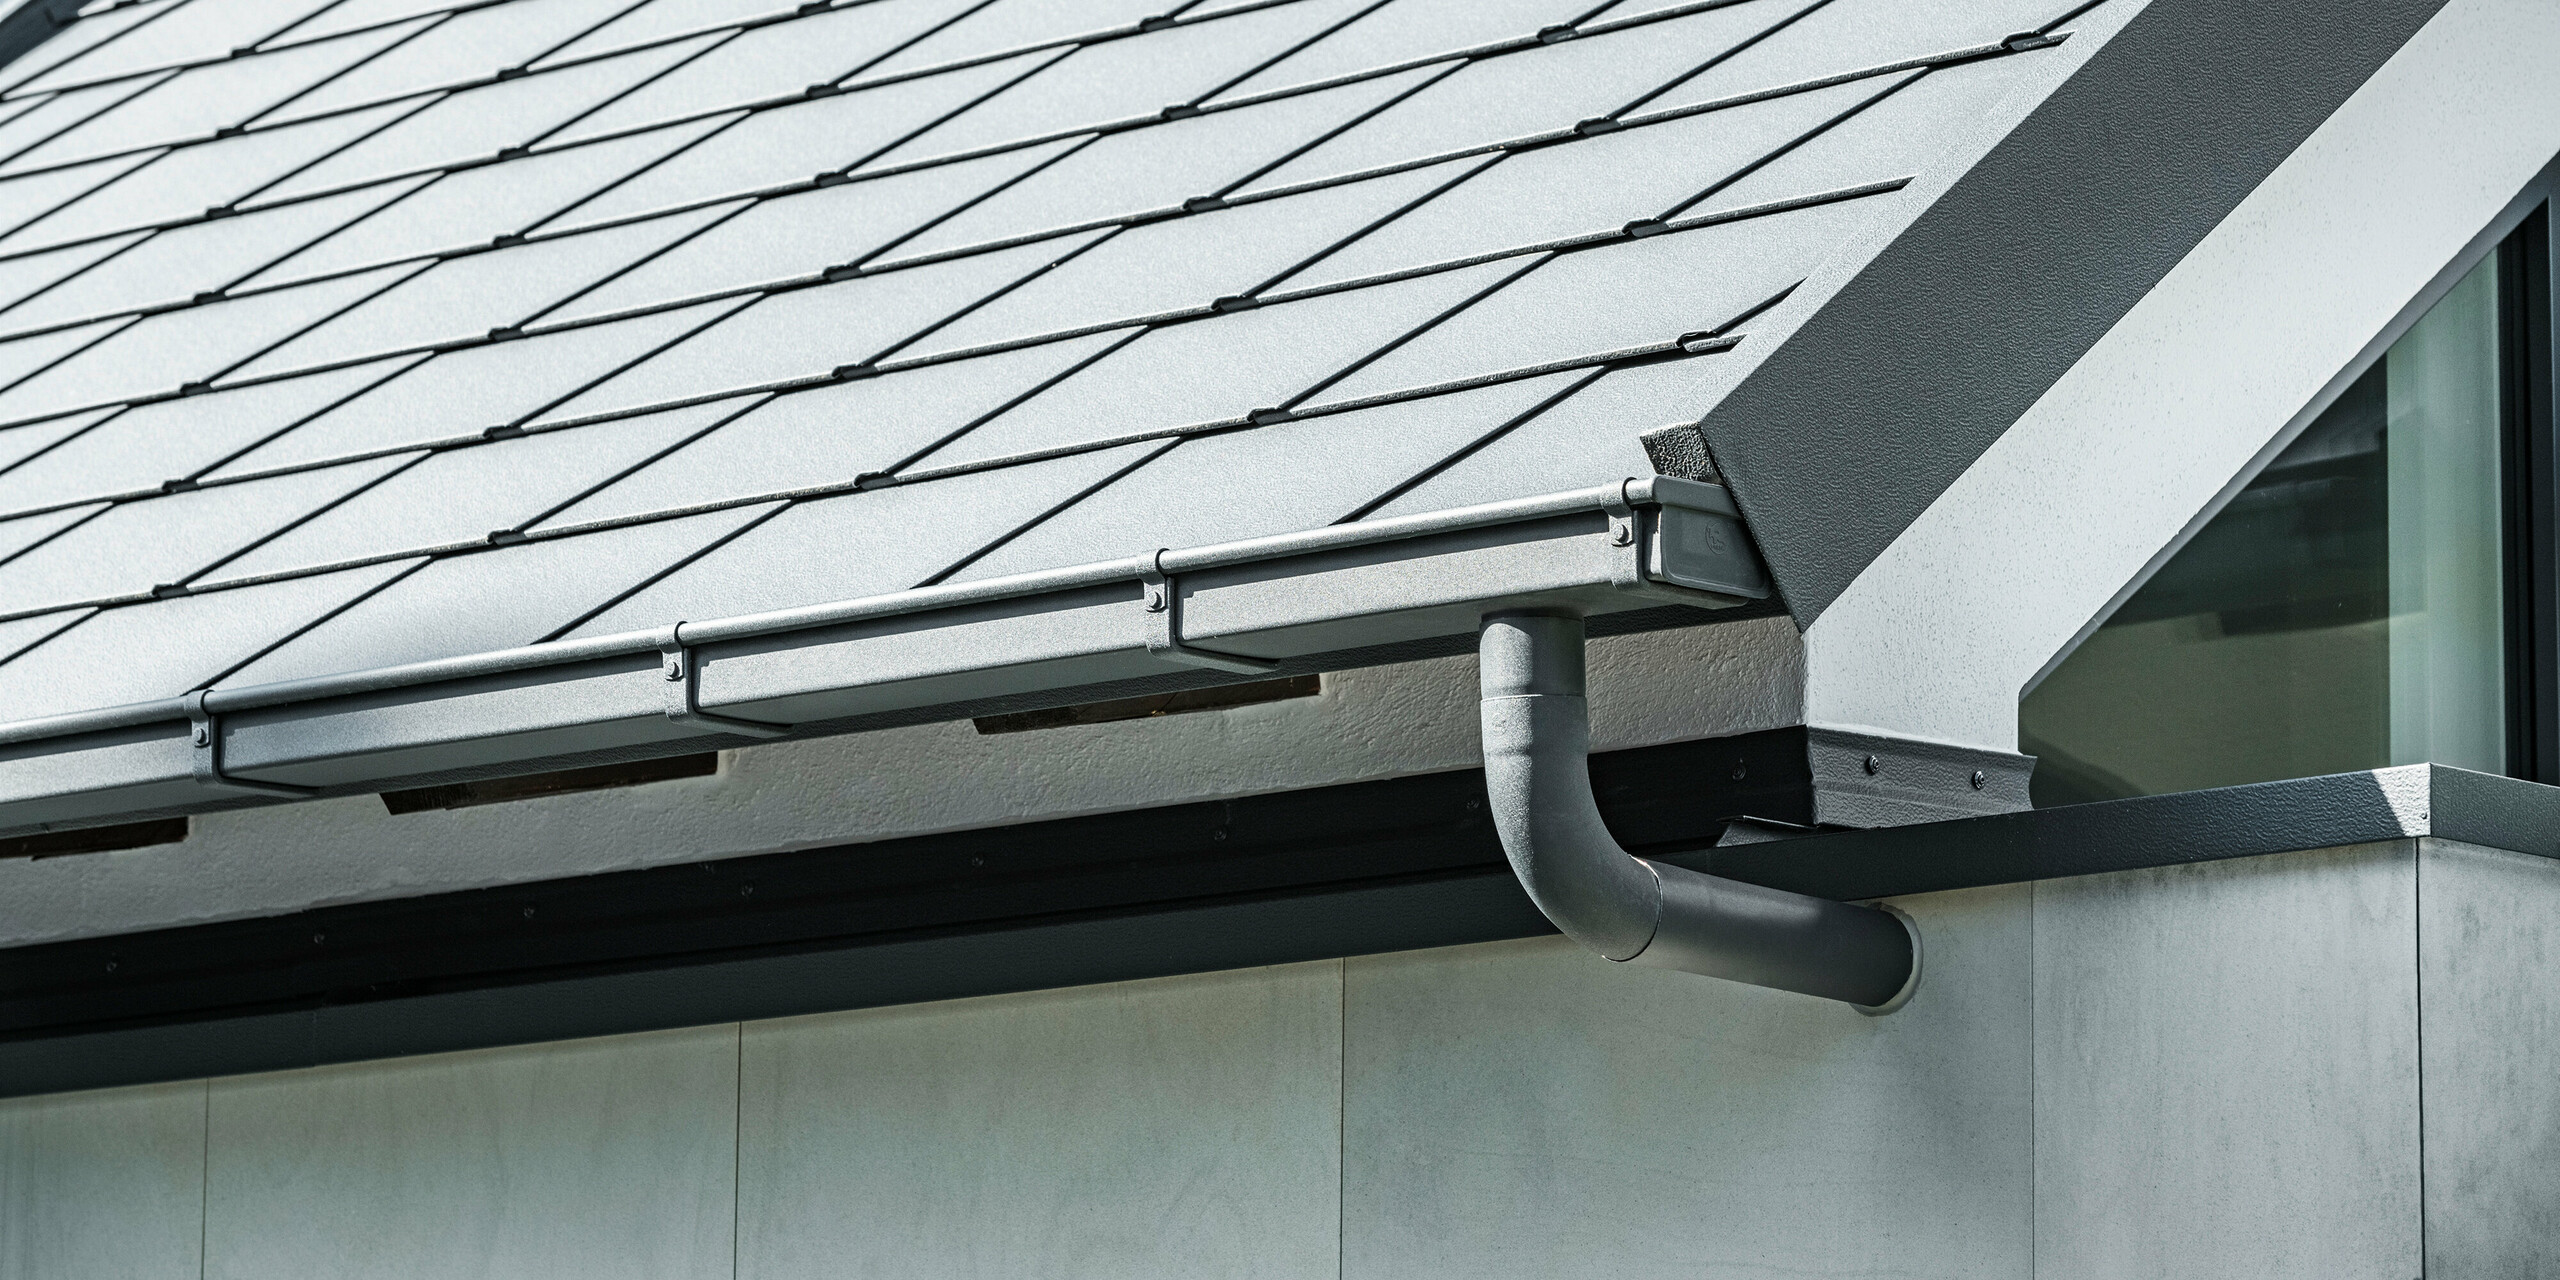 PREFA Dachentwässerungssystem und Dachschindeln DS.19 in P.10 Anthrazit am Dach eines Einfamilienhauses in Dortmund.